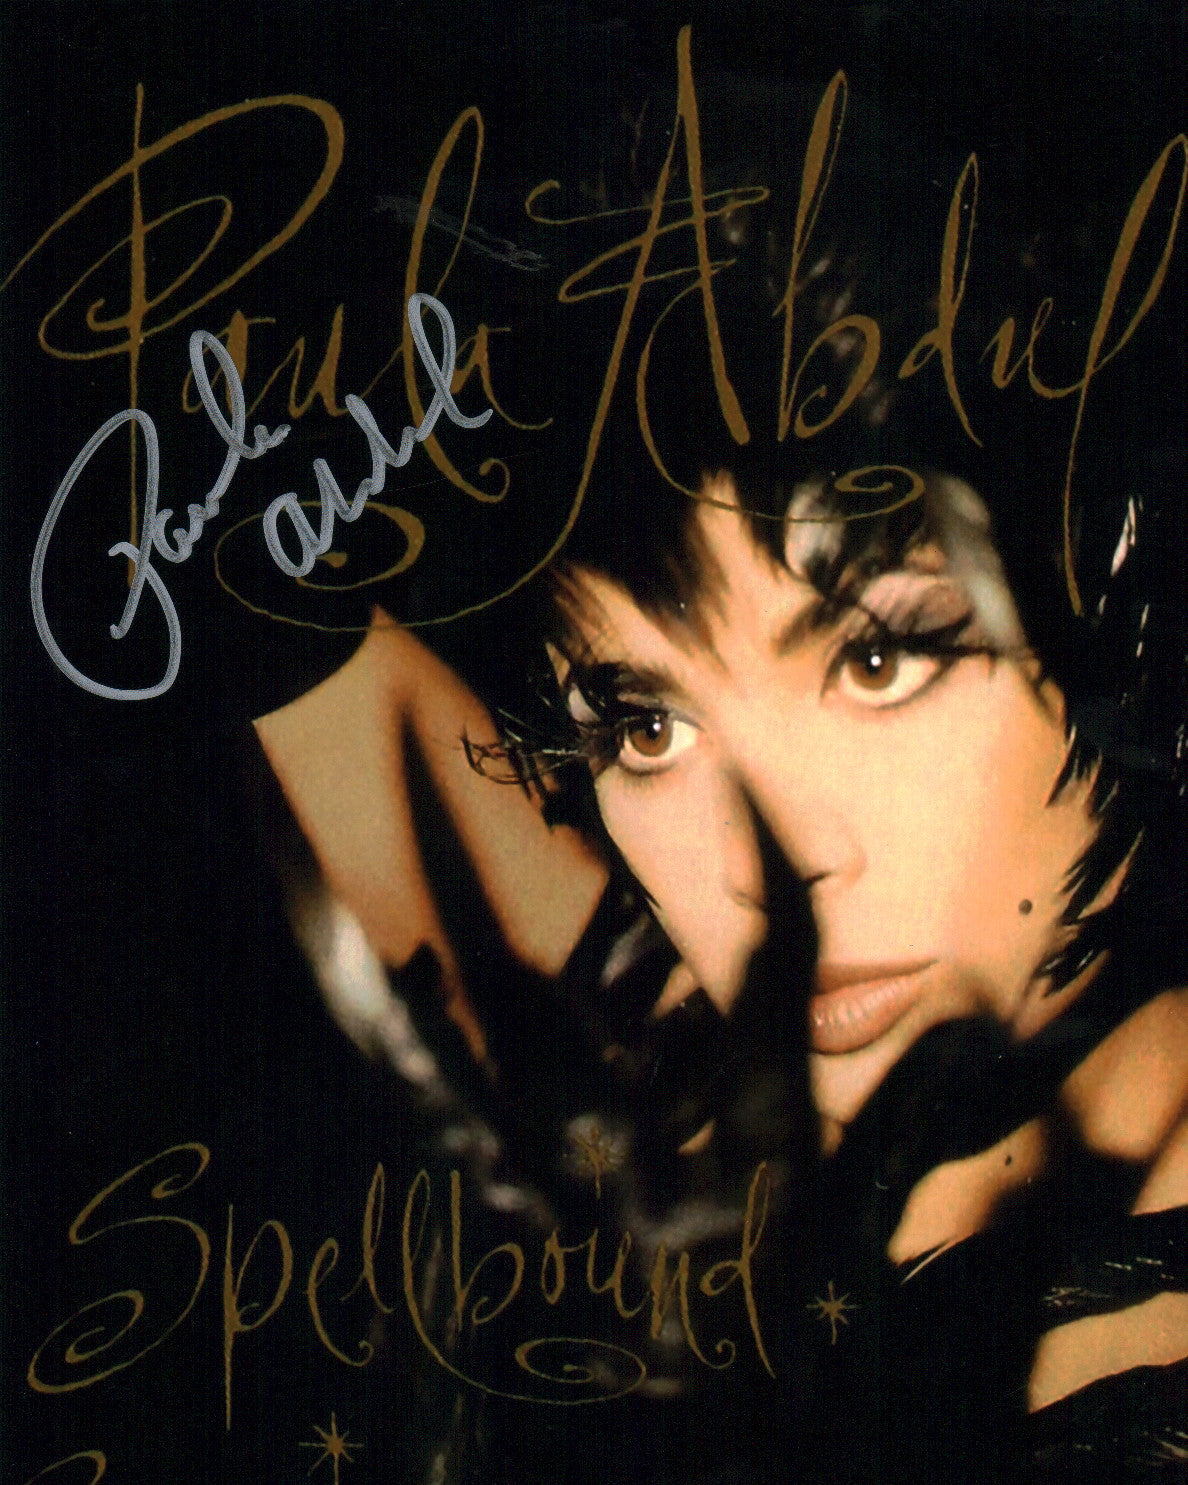 Paula Abdul 8x10 Signed Photo JSA Certified Autograph GalaxyCon